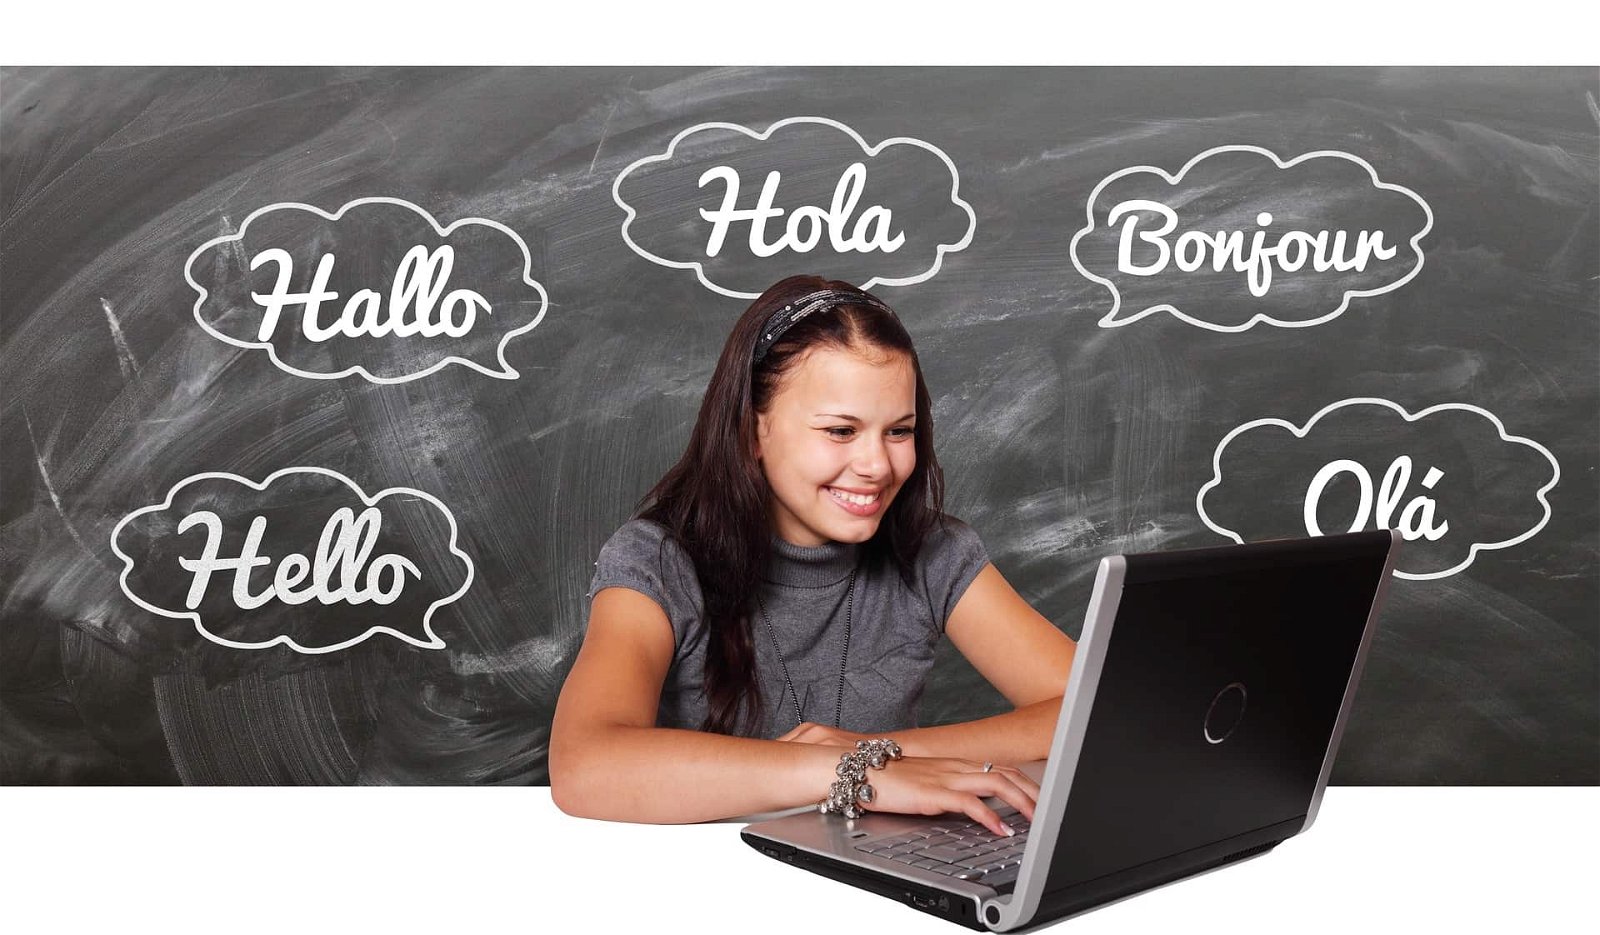 Meisje kijkt naar laptop en is omringd door het woordje 'Hallo' in verschillende talen.